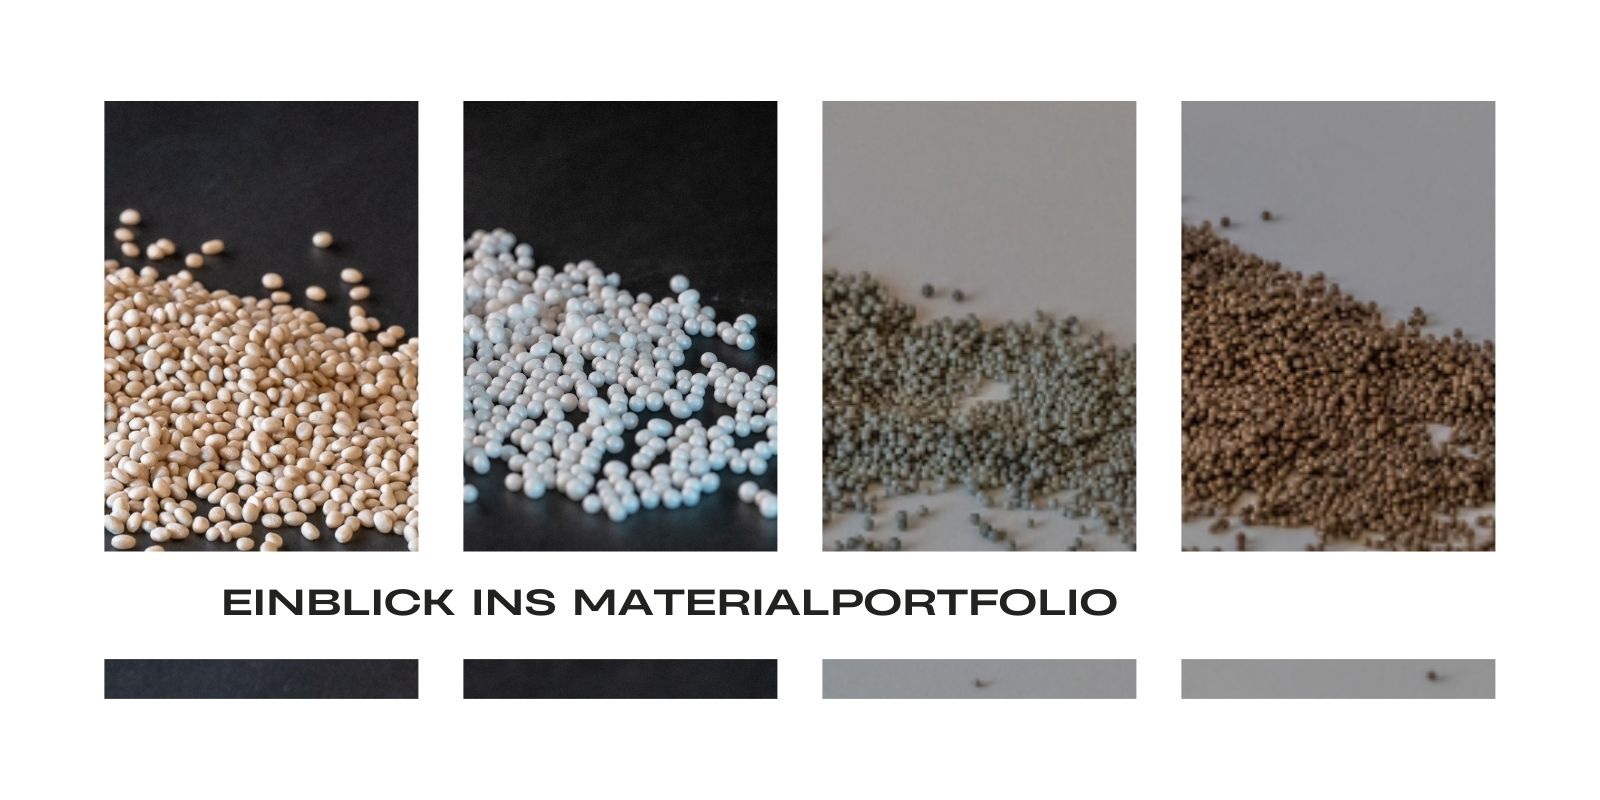 Das Bild zeigt einen Einblick ins Materialportfolio von Sarna Plastec.